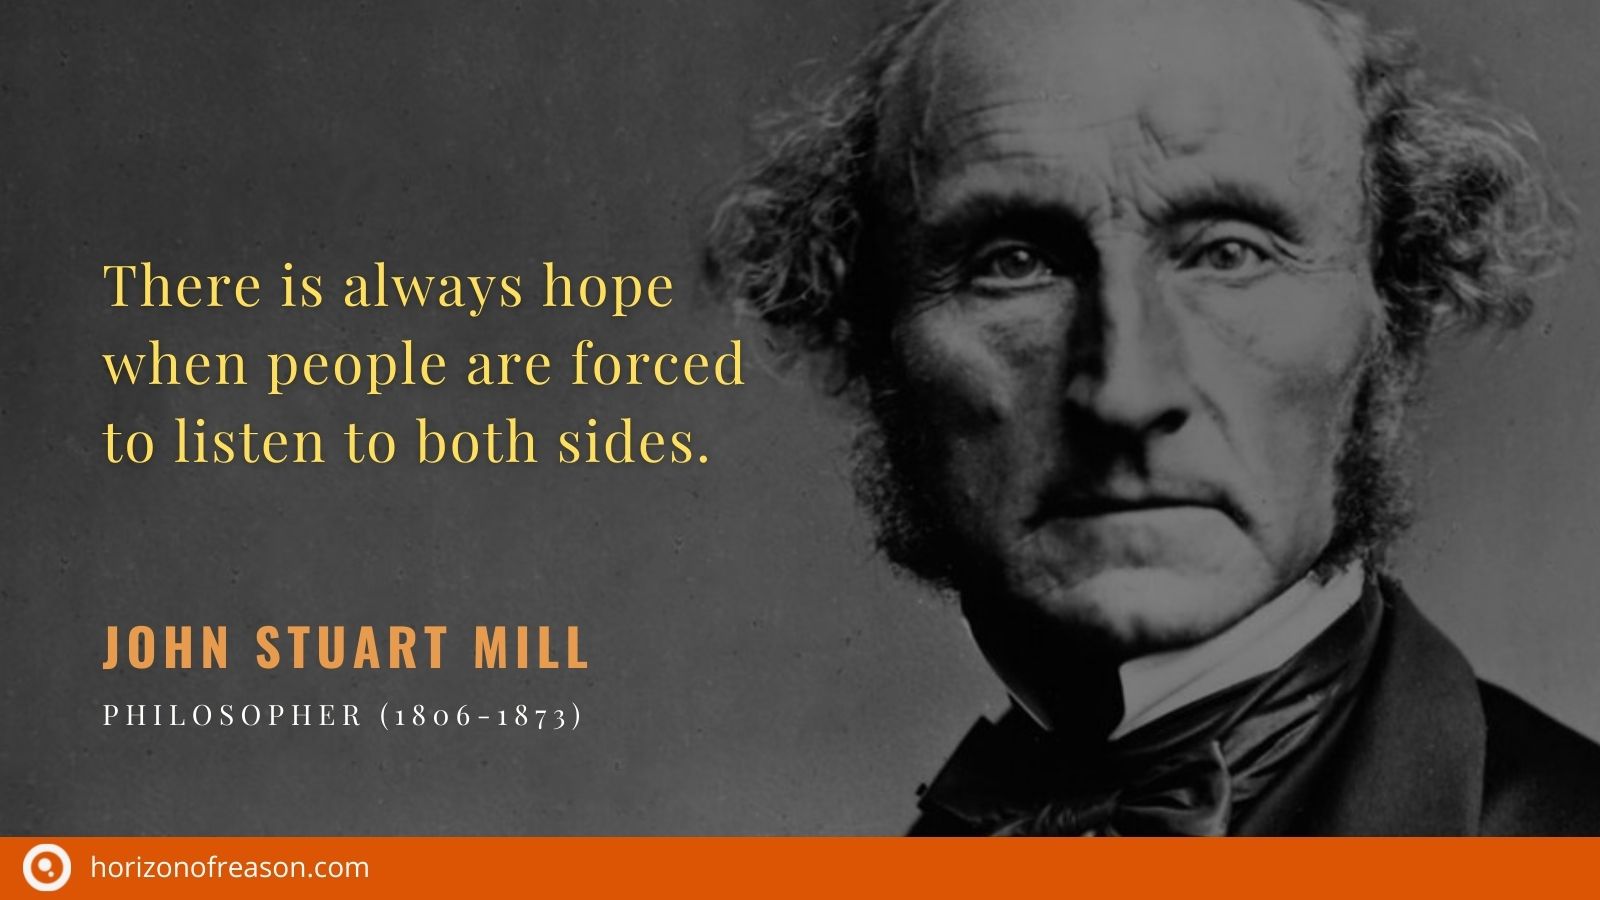 John Stuart Mill quote